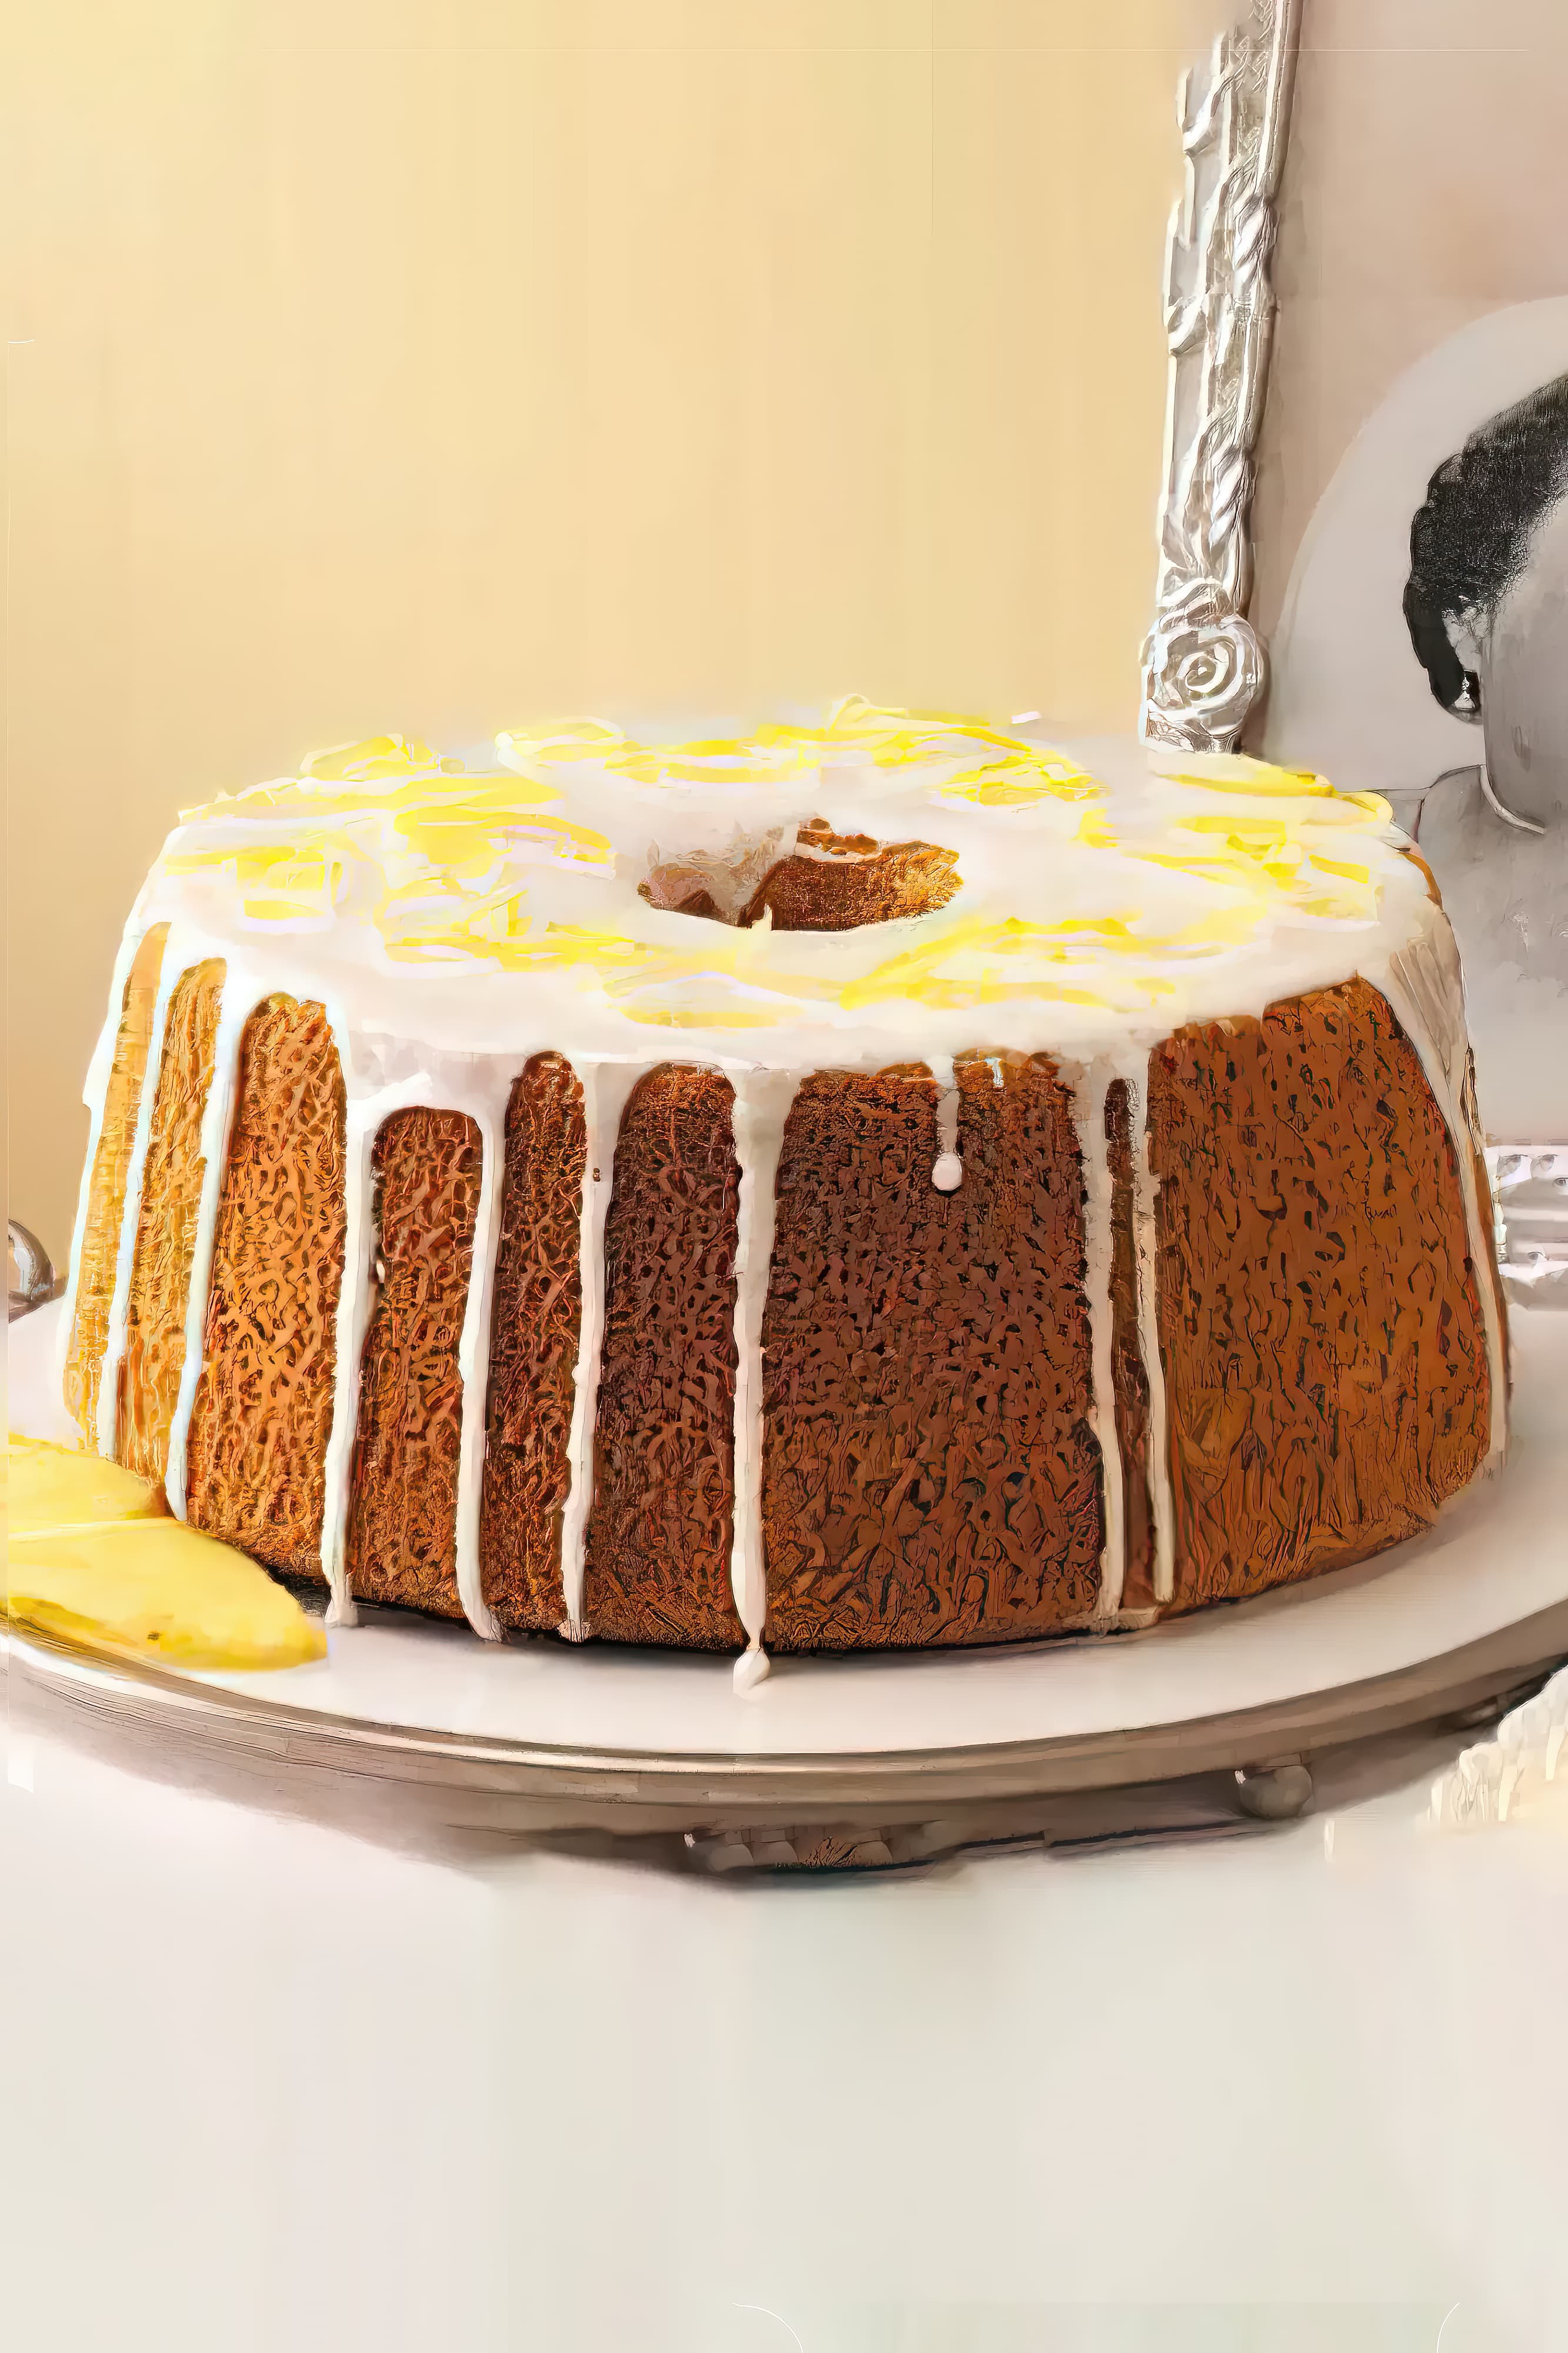 Image of pineapple chiffon cake